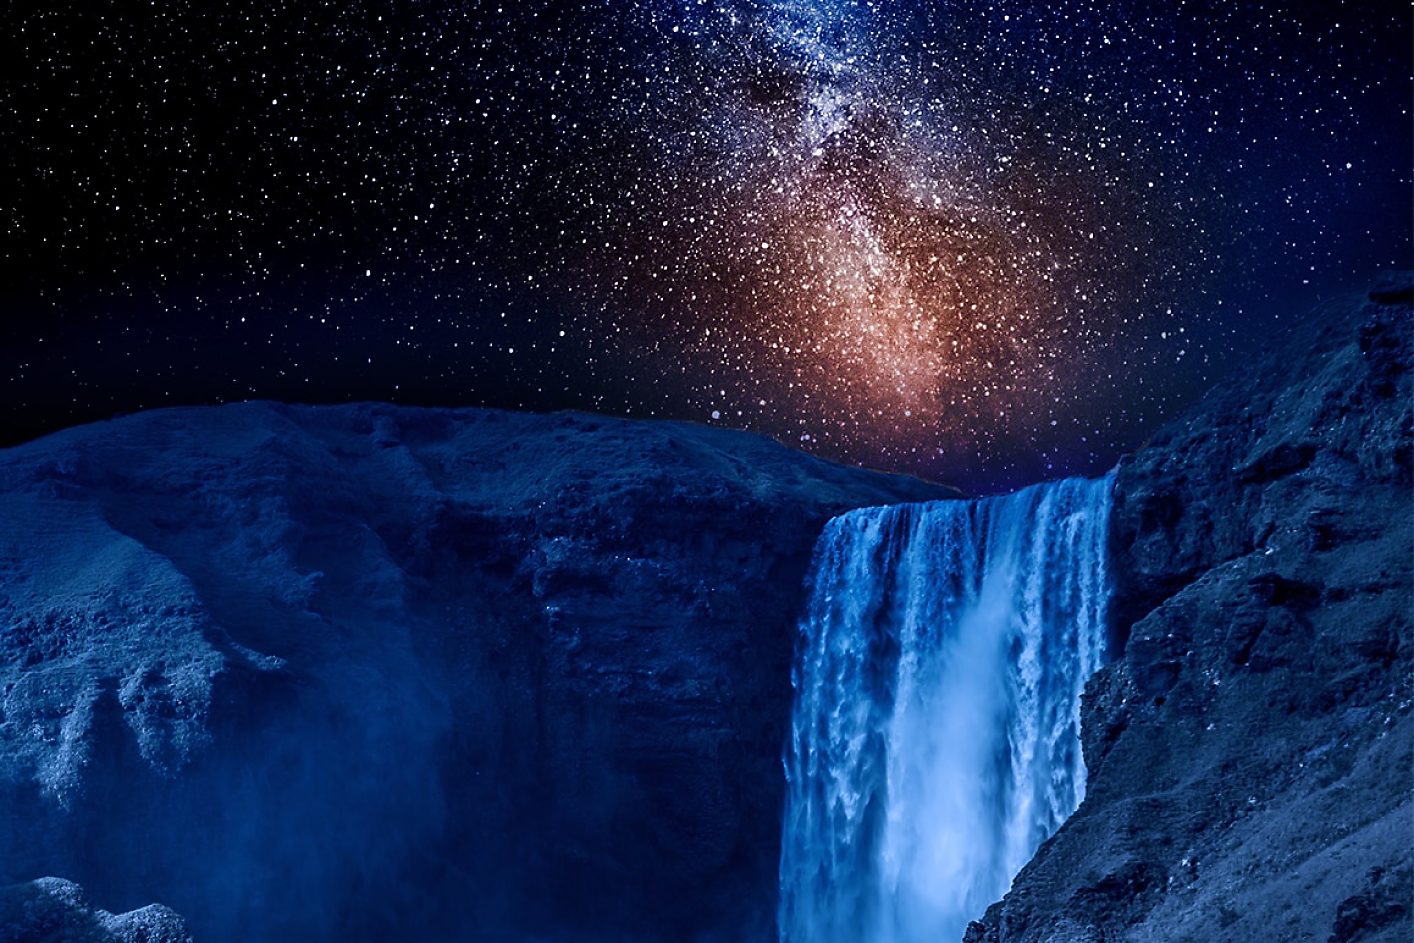 Image spectaculaire d'un ciel nocturne au-dessus d'une chute d'eau